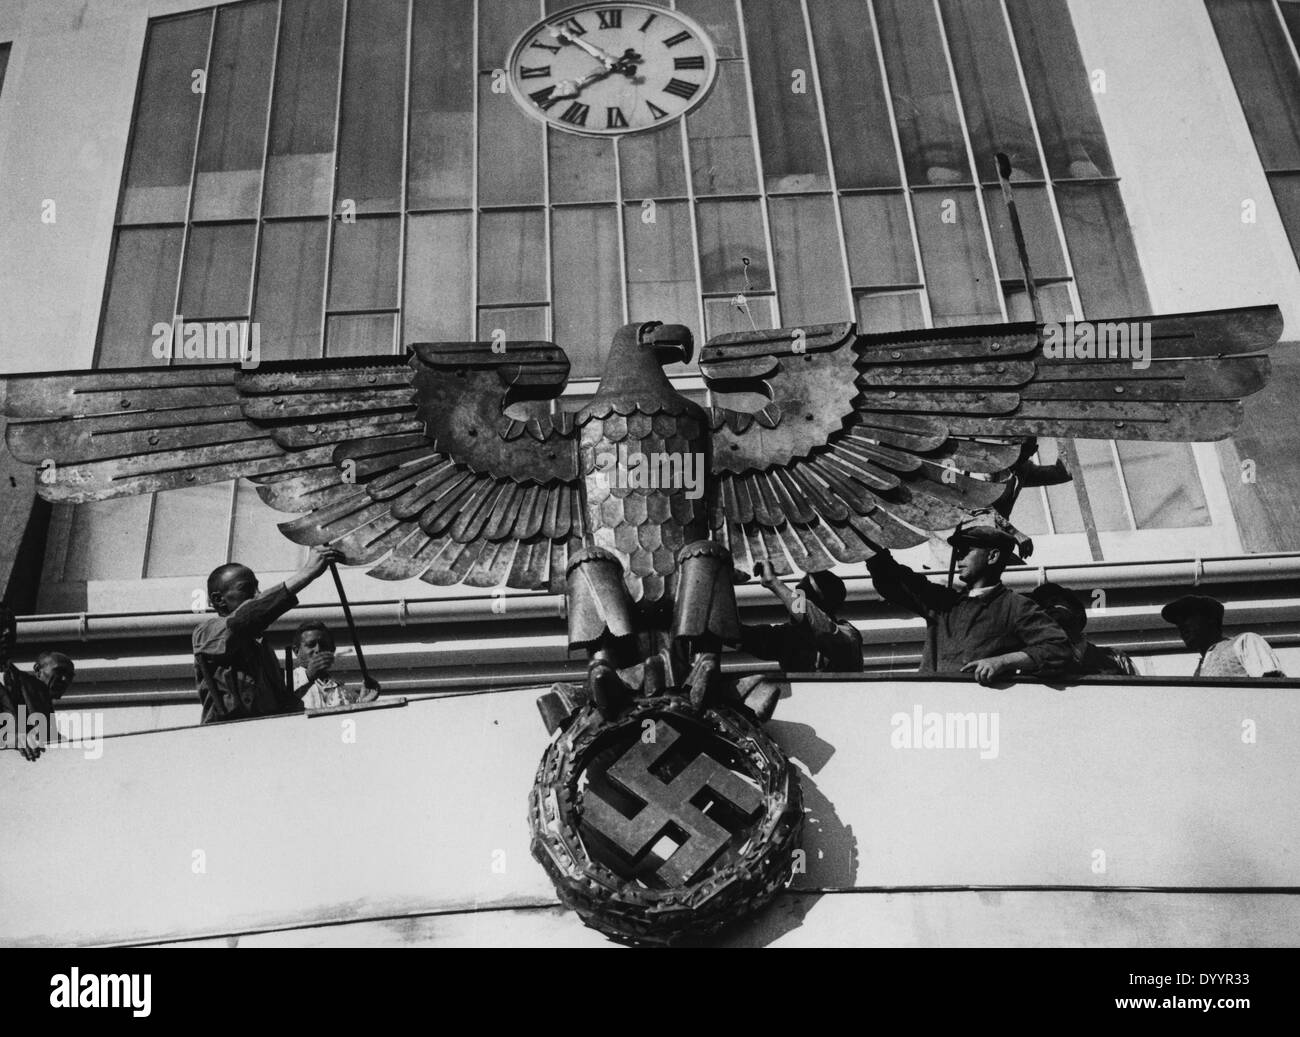 Aigle impérial avec croix gammée à Nuremberg, 1933 Banque D'Images